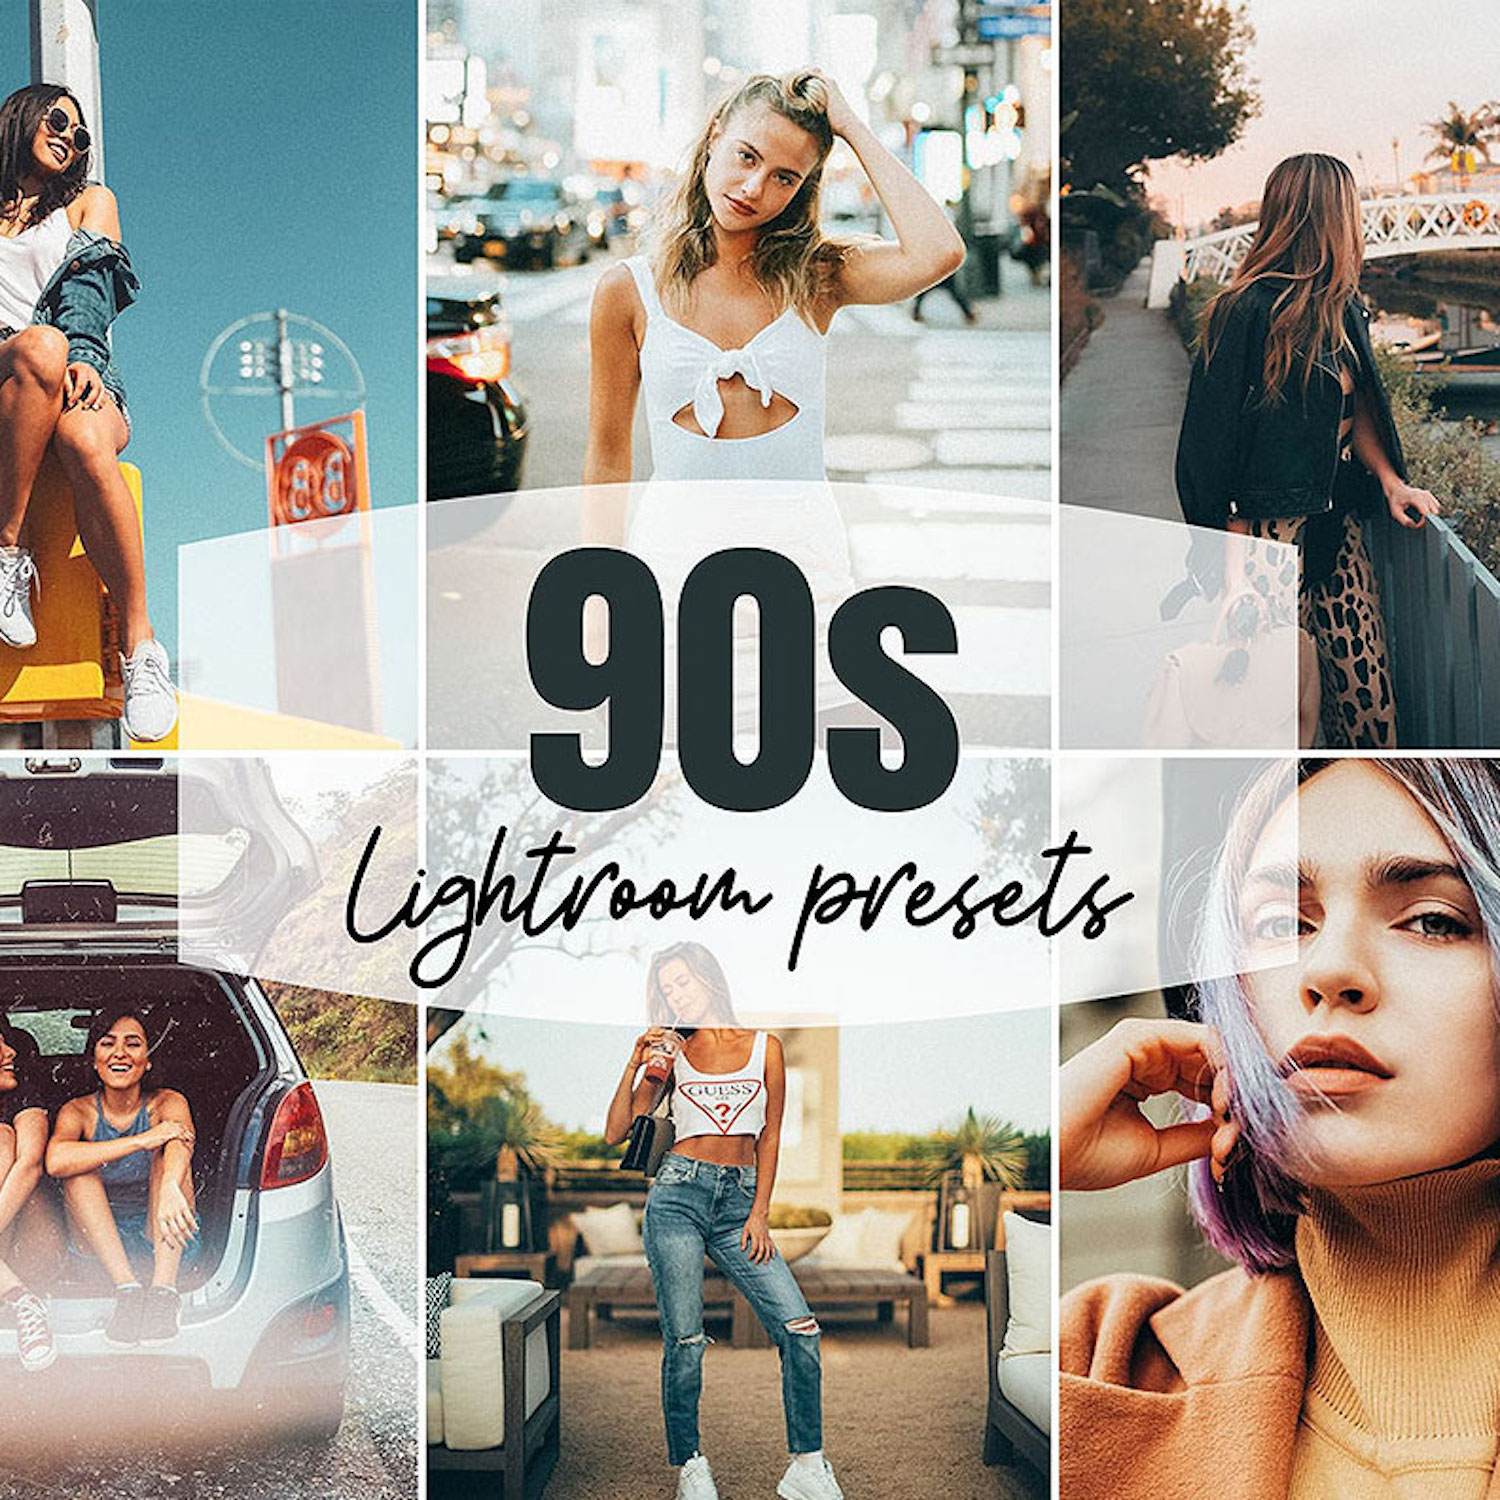 90s Lightroom Presets Mobile & Desktop cover image.